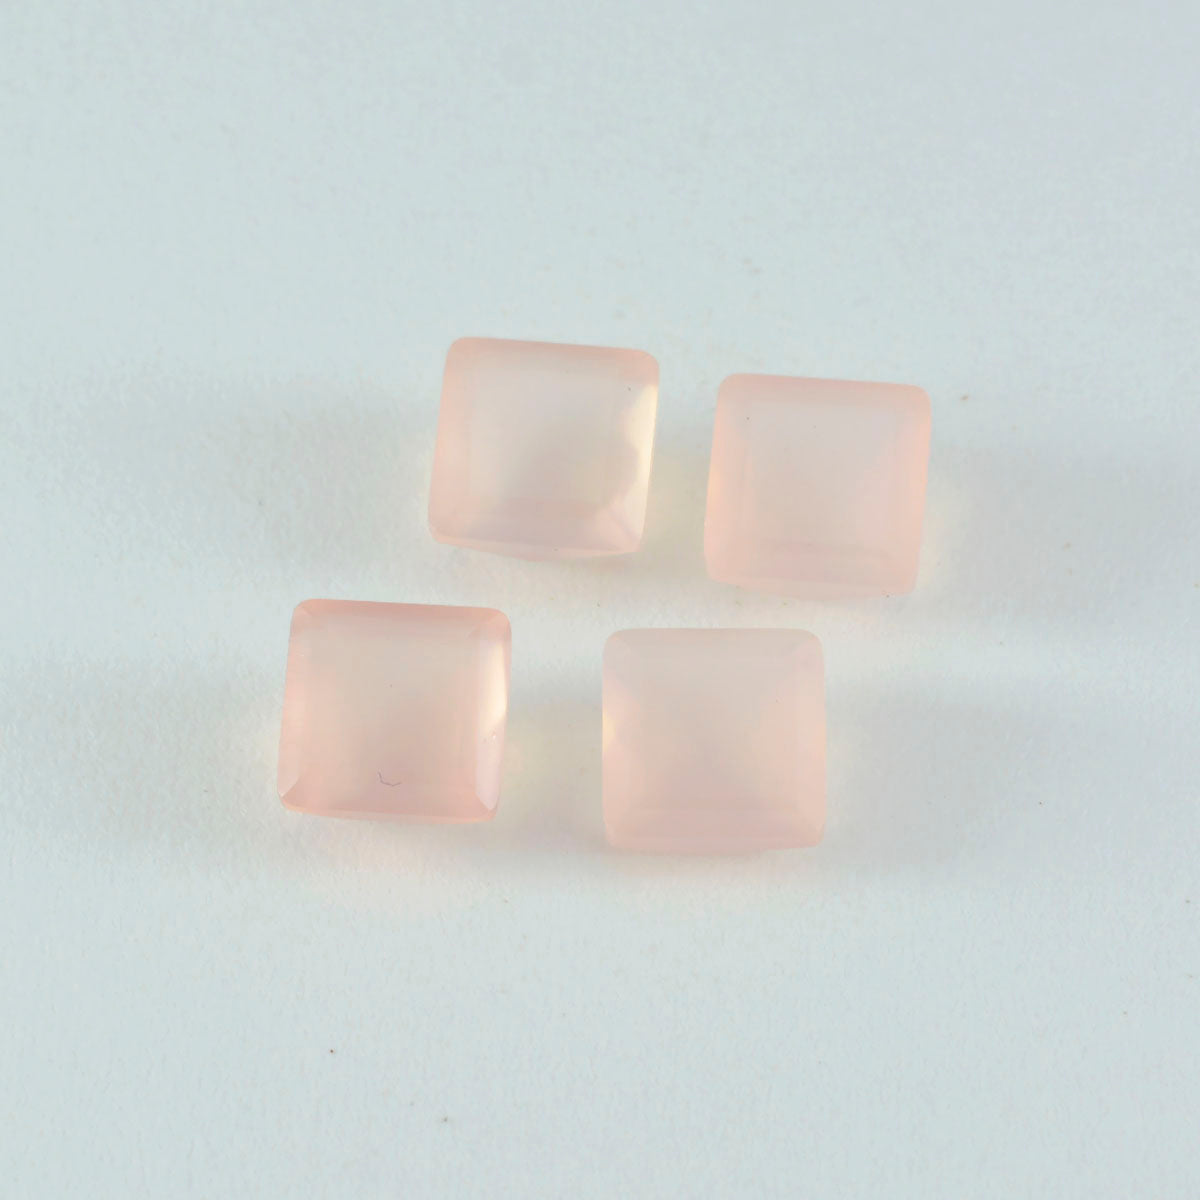 Riyogems 1pc quartz rose à facettes 15x15mm forme carrée pierres précieuses de qualité beauté